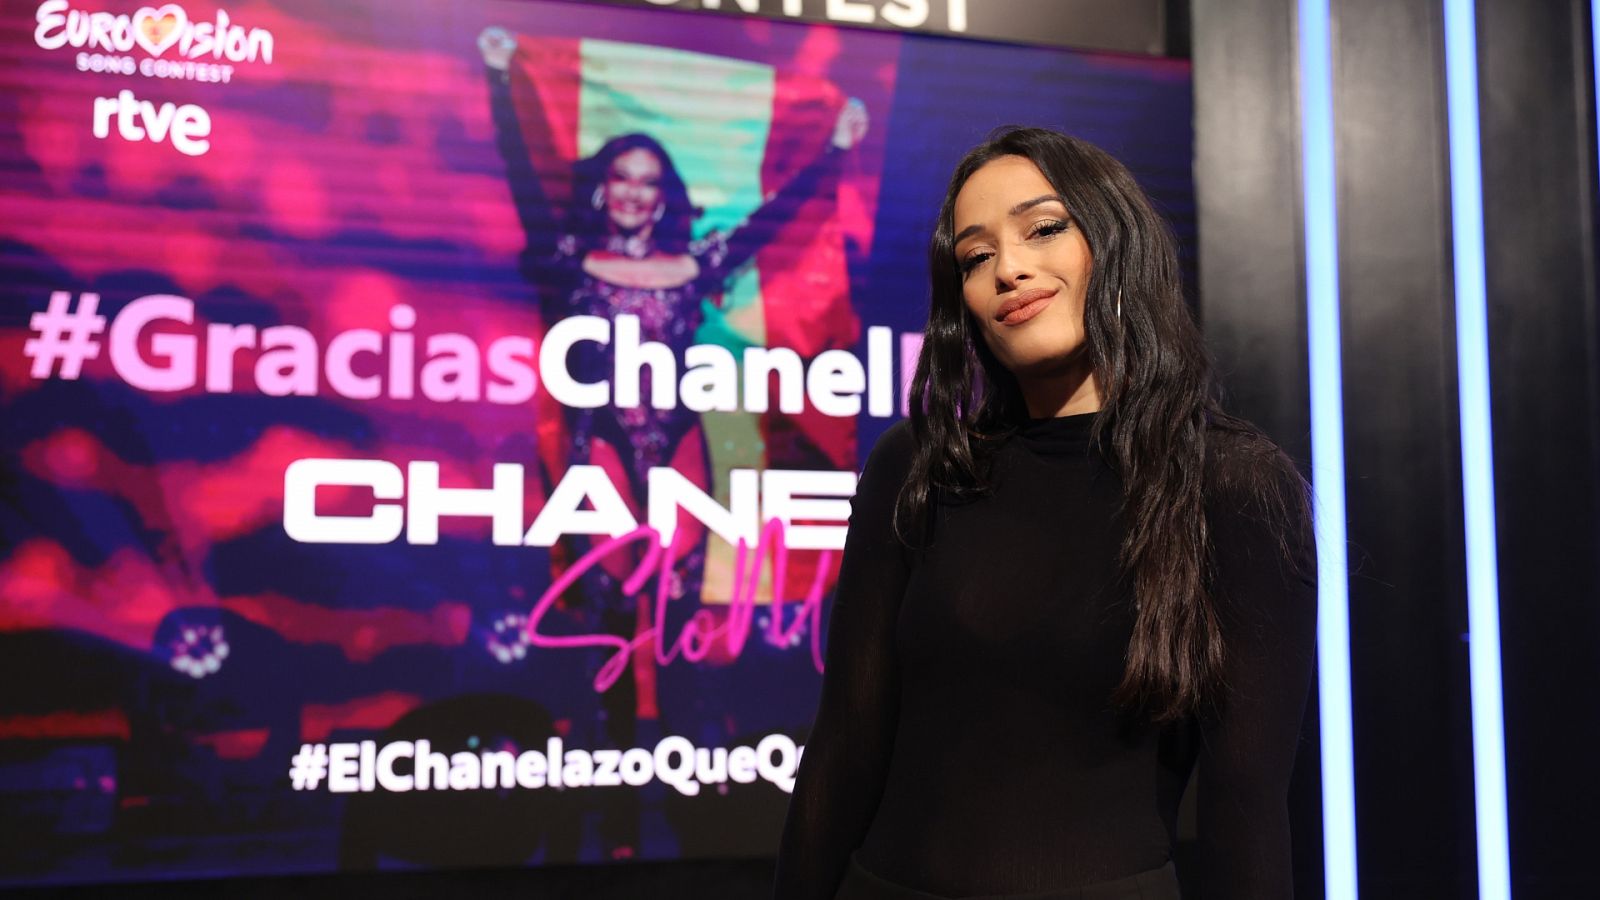 Chanel, representante de España en Eurovisión 2022